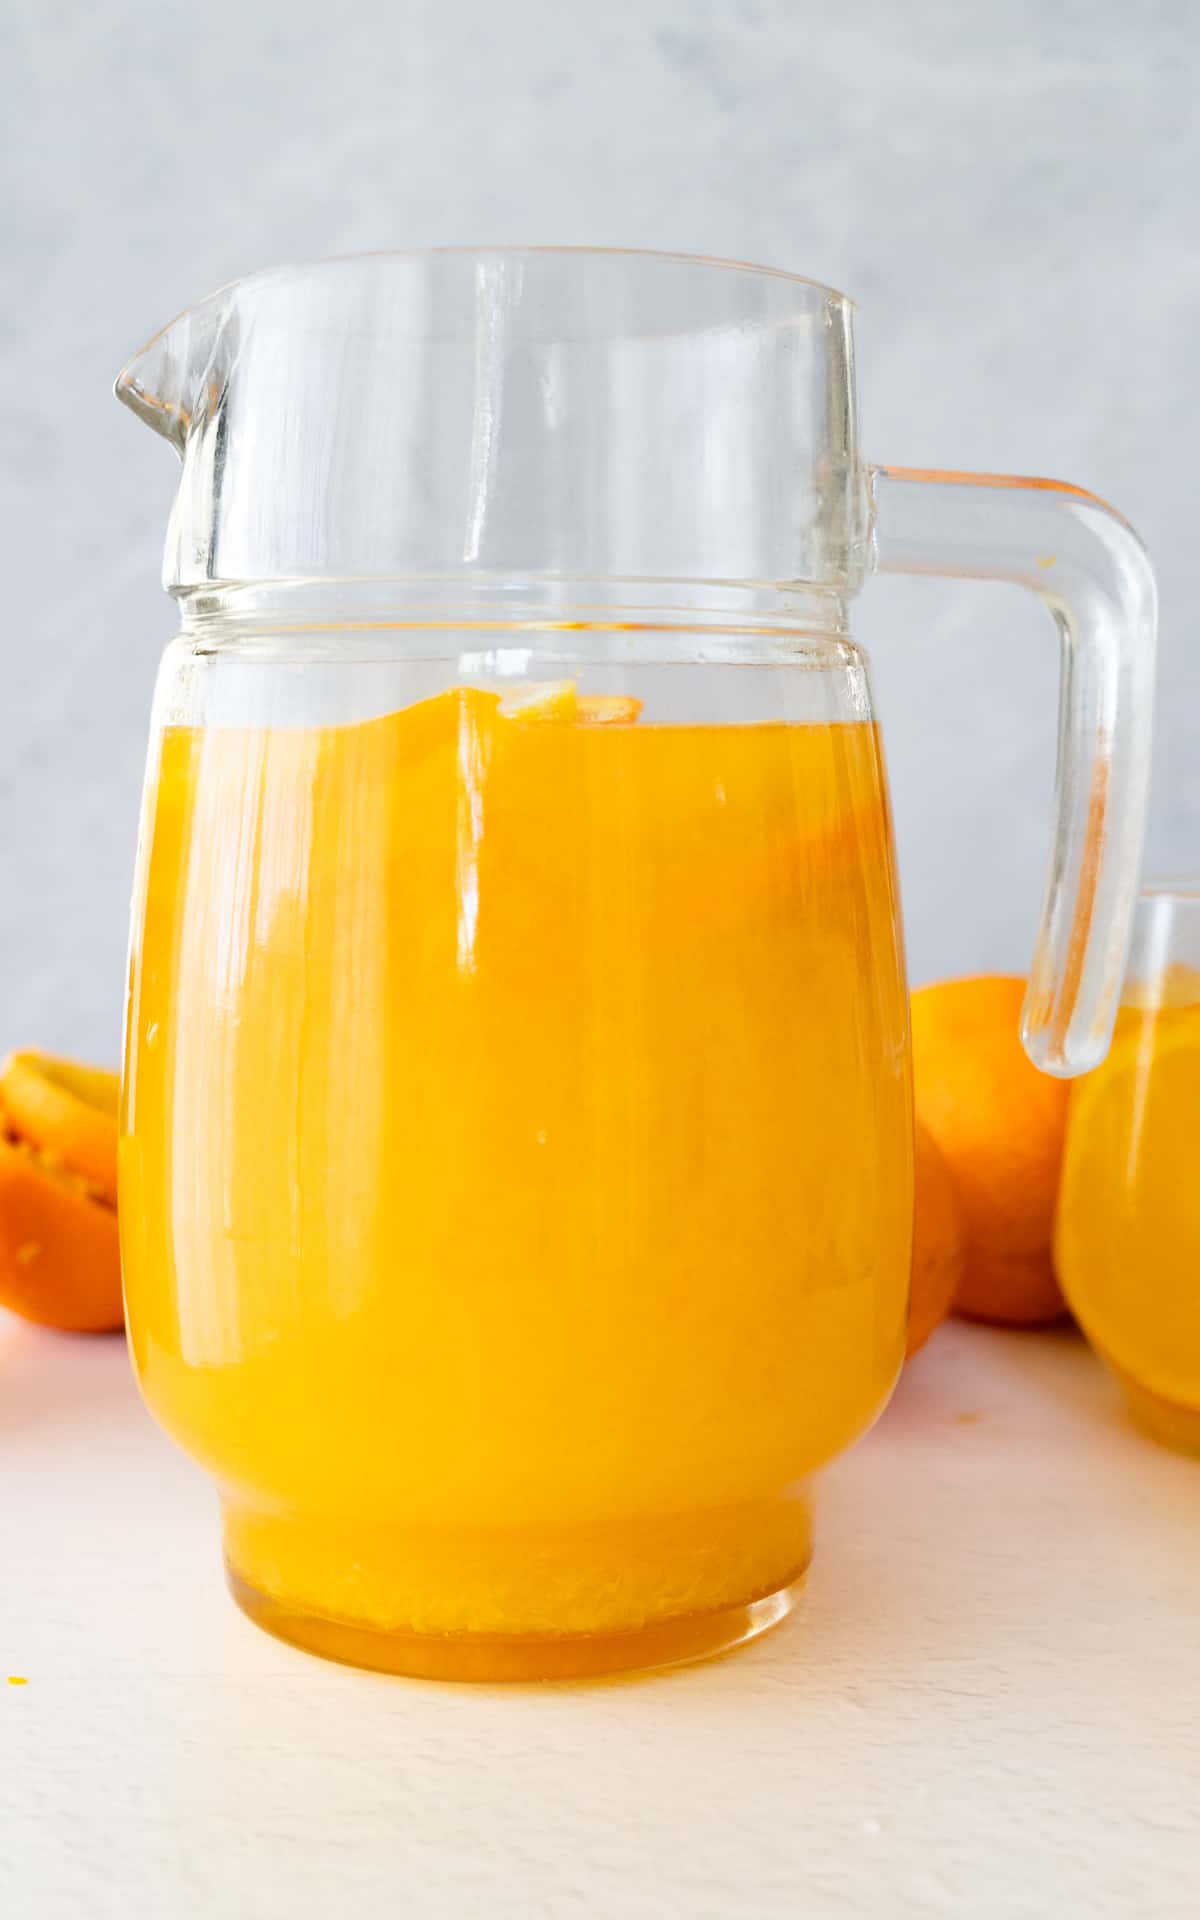 orangeade in a jug